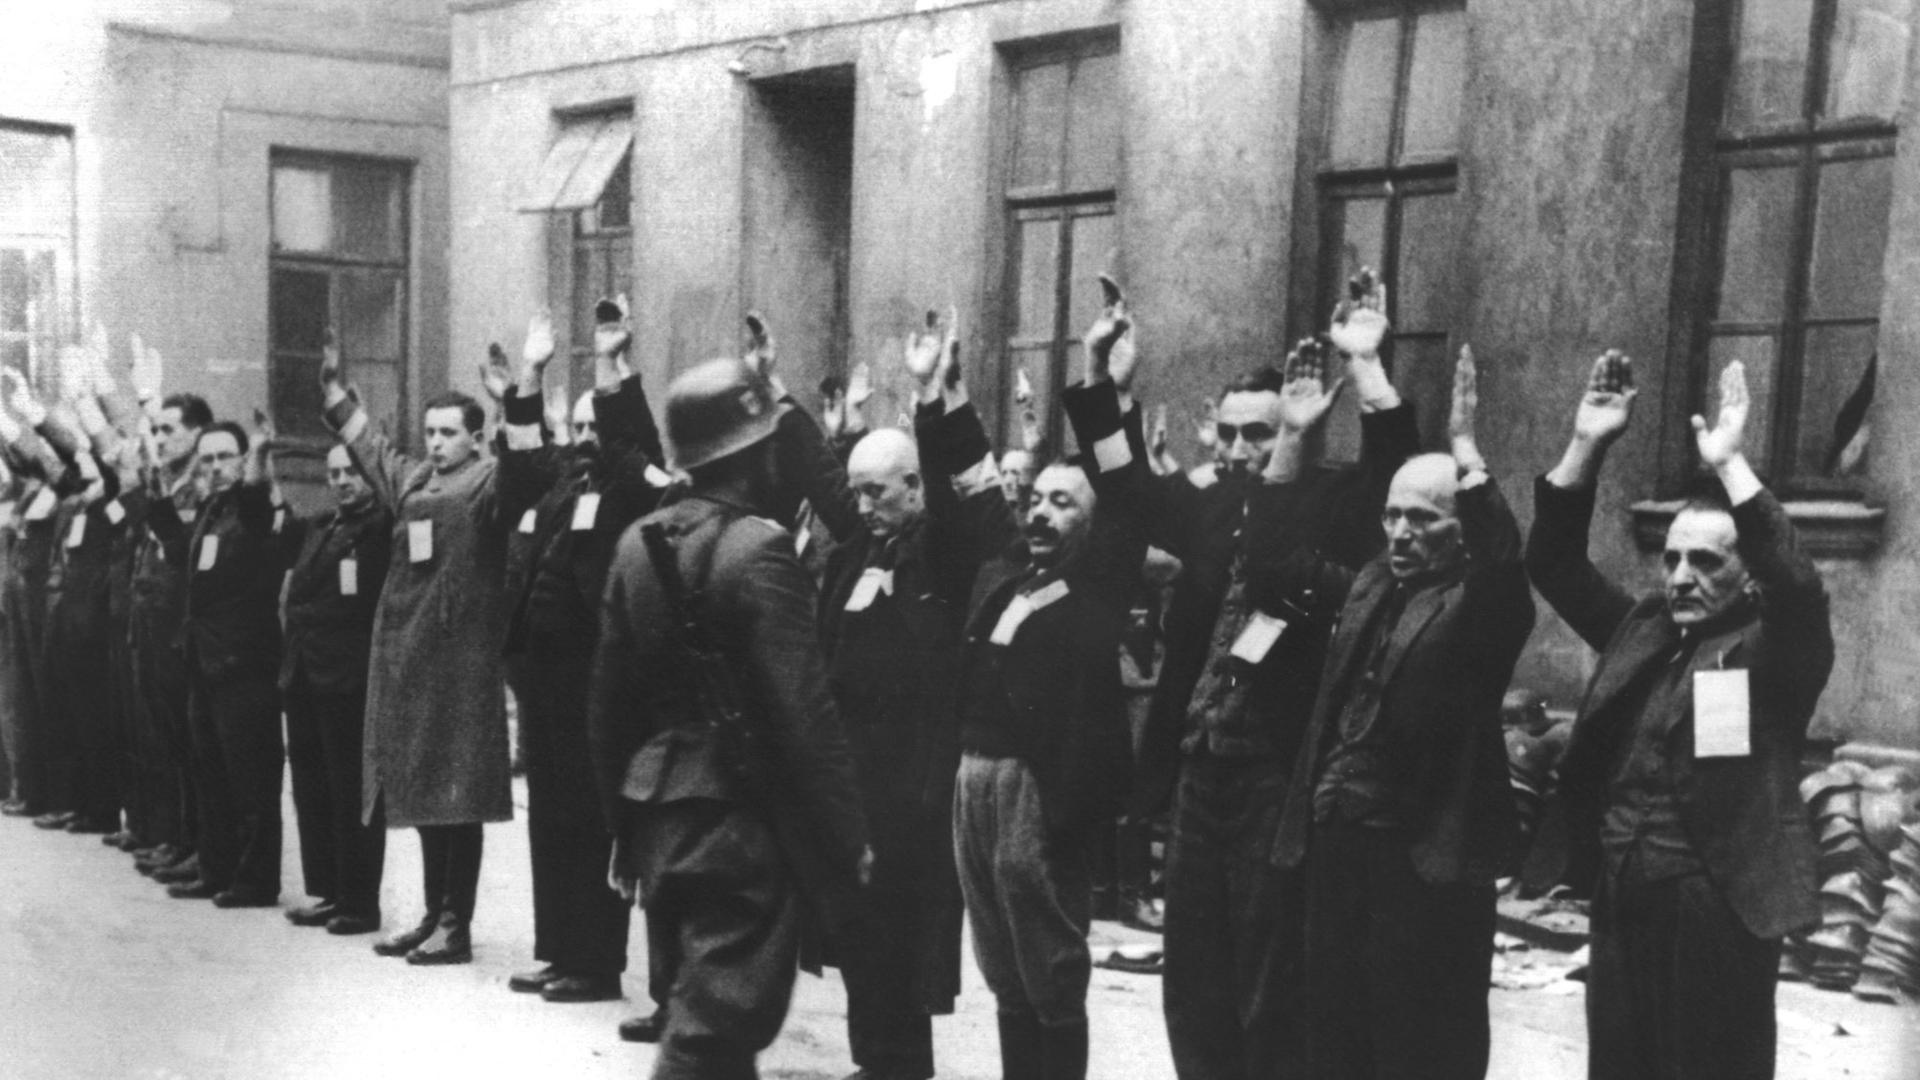 Bewacht von einem deutschen Soldaten stehen Bewohner des Warschauer Ghettos mit erhobenen Armen in einem Innenhof.